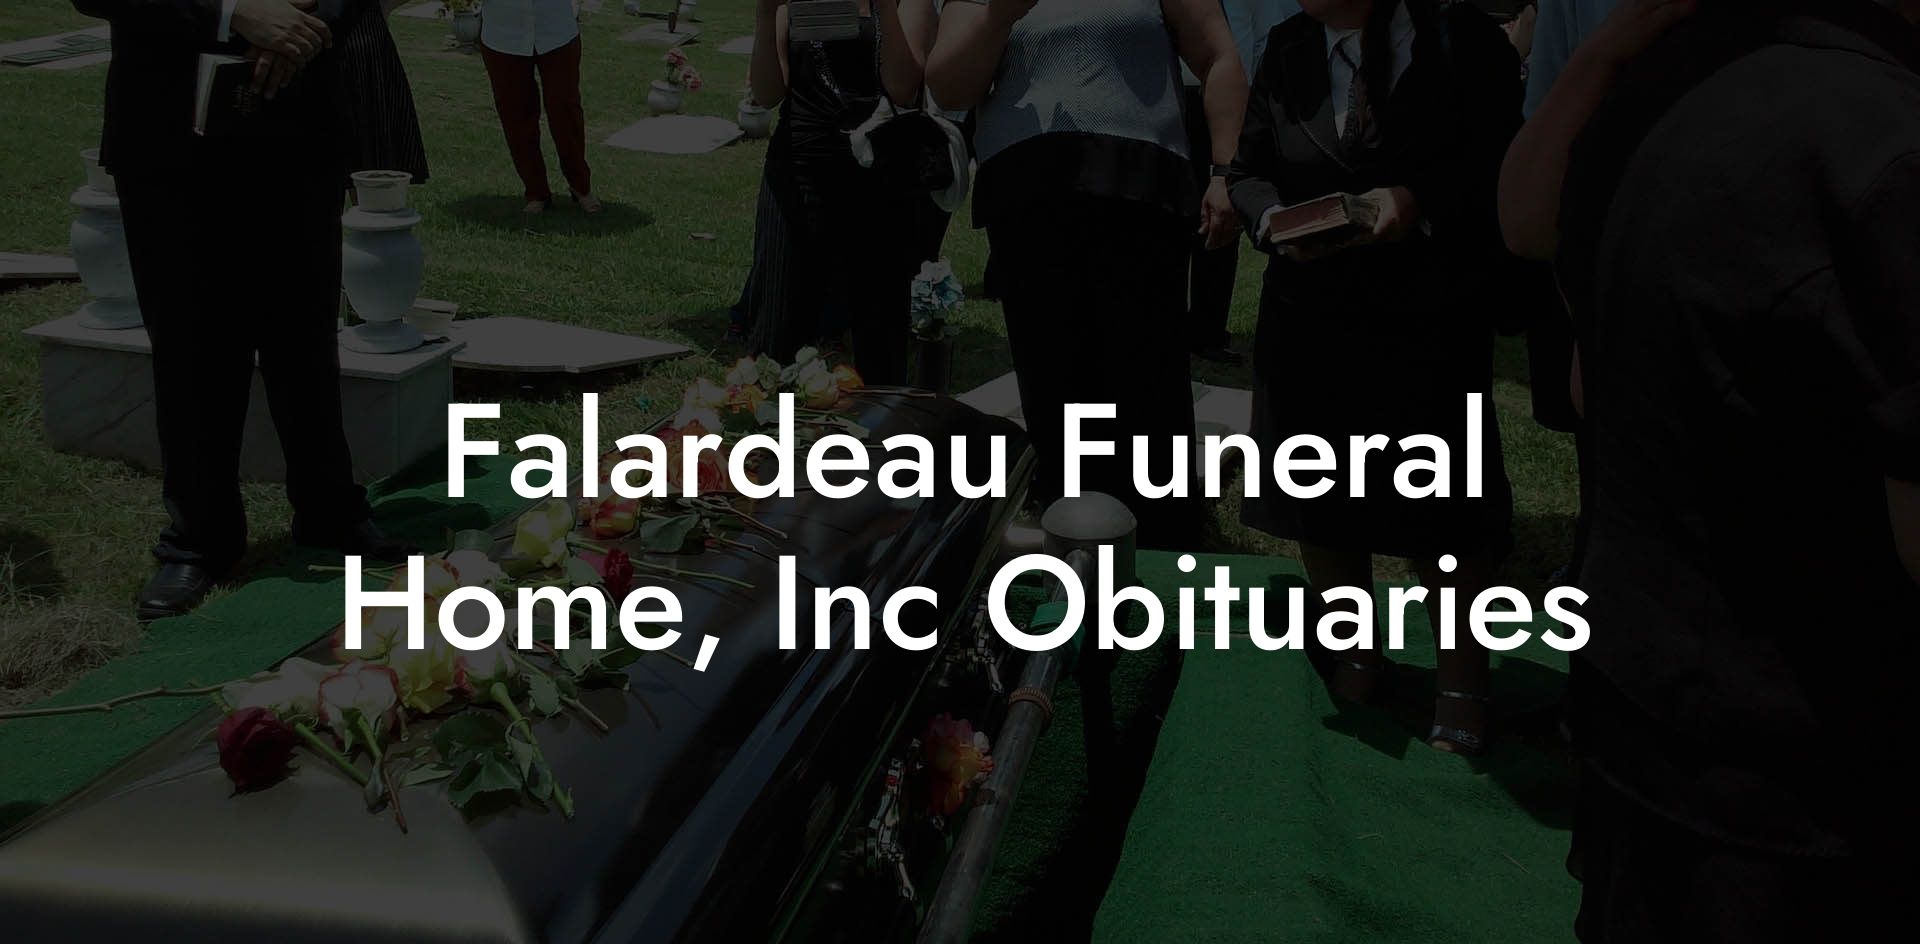 Falardeau Funeral Home, Inc Obituaries